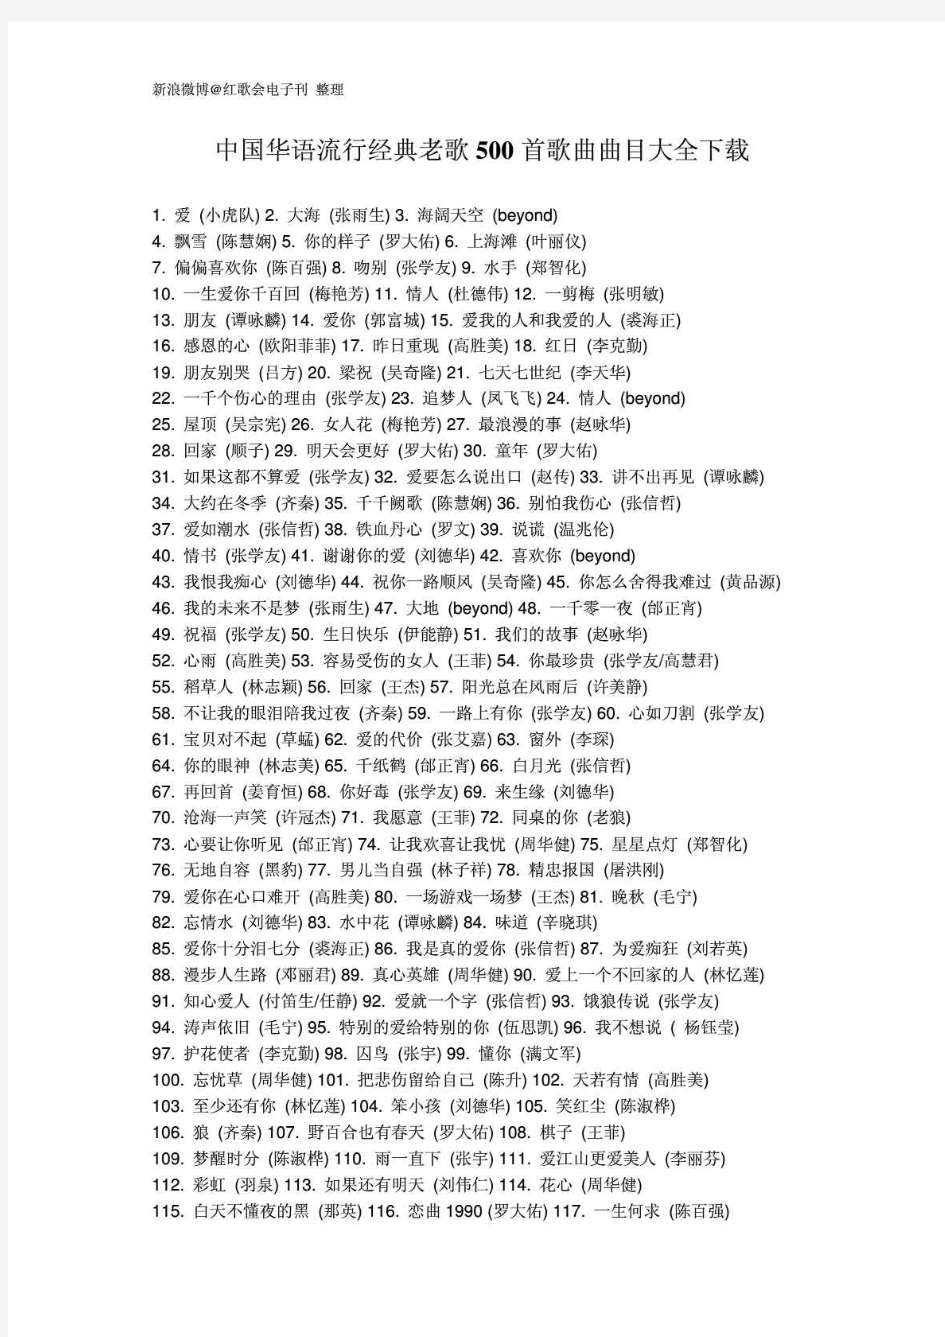 中国华语流行经典老歌500首歌曲曲目大全下载